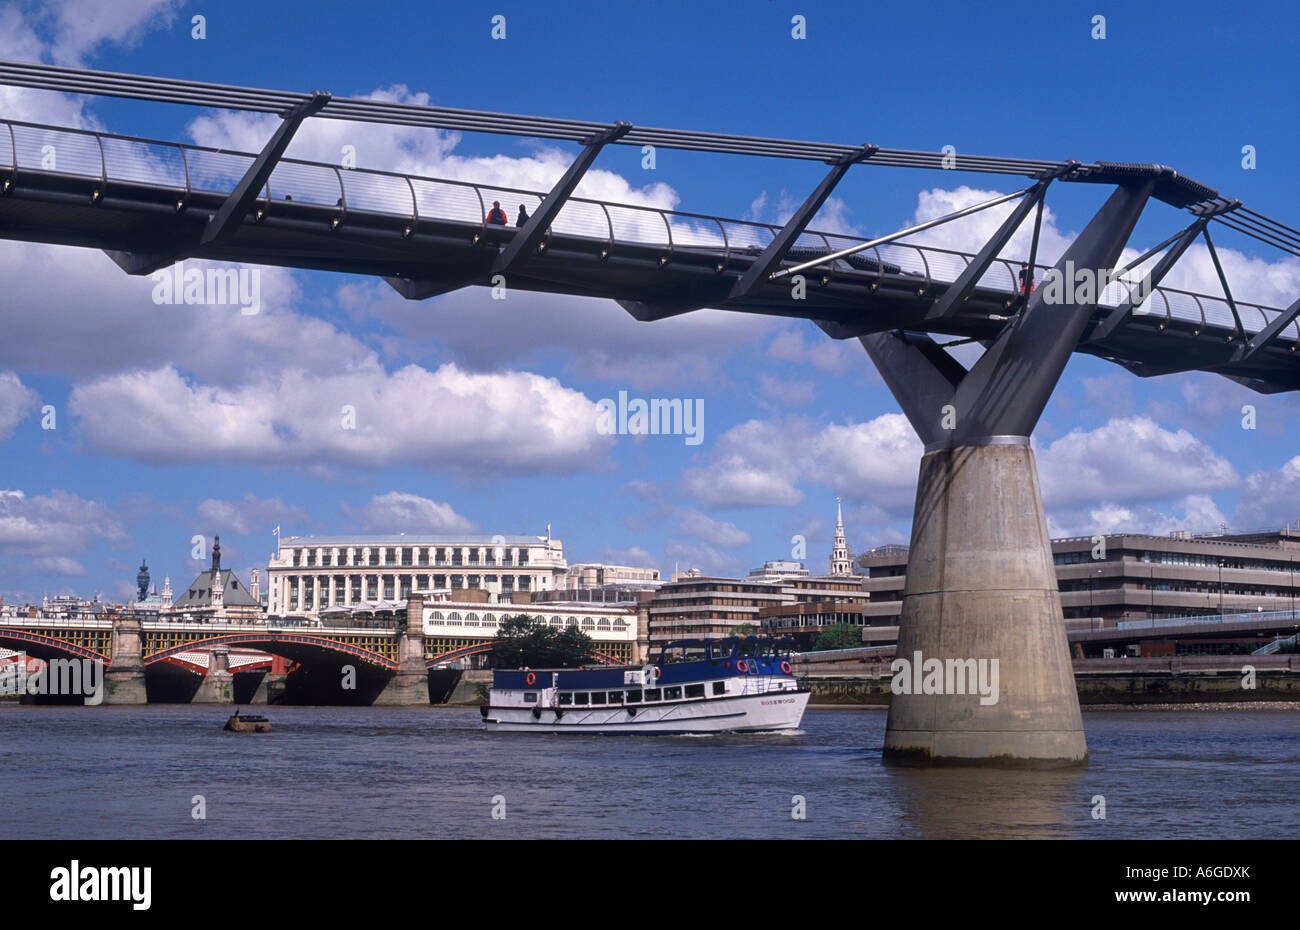 Pont du Millenium (architecte Norman Foster & Partners, 2000) sur la rivière Thames, et des excursions en bateau, Londres, Angleterre Banque D'Images